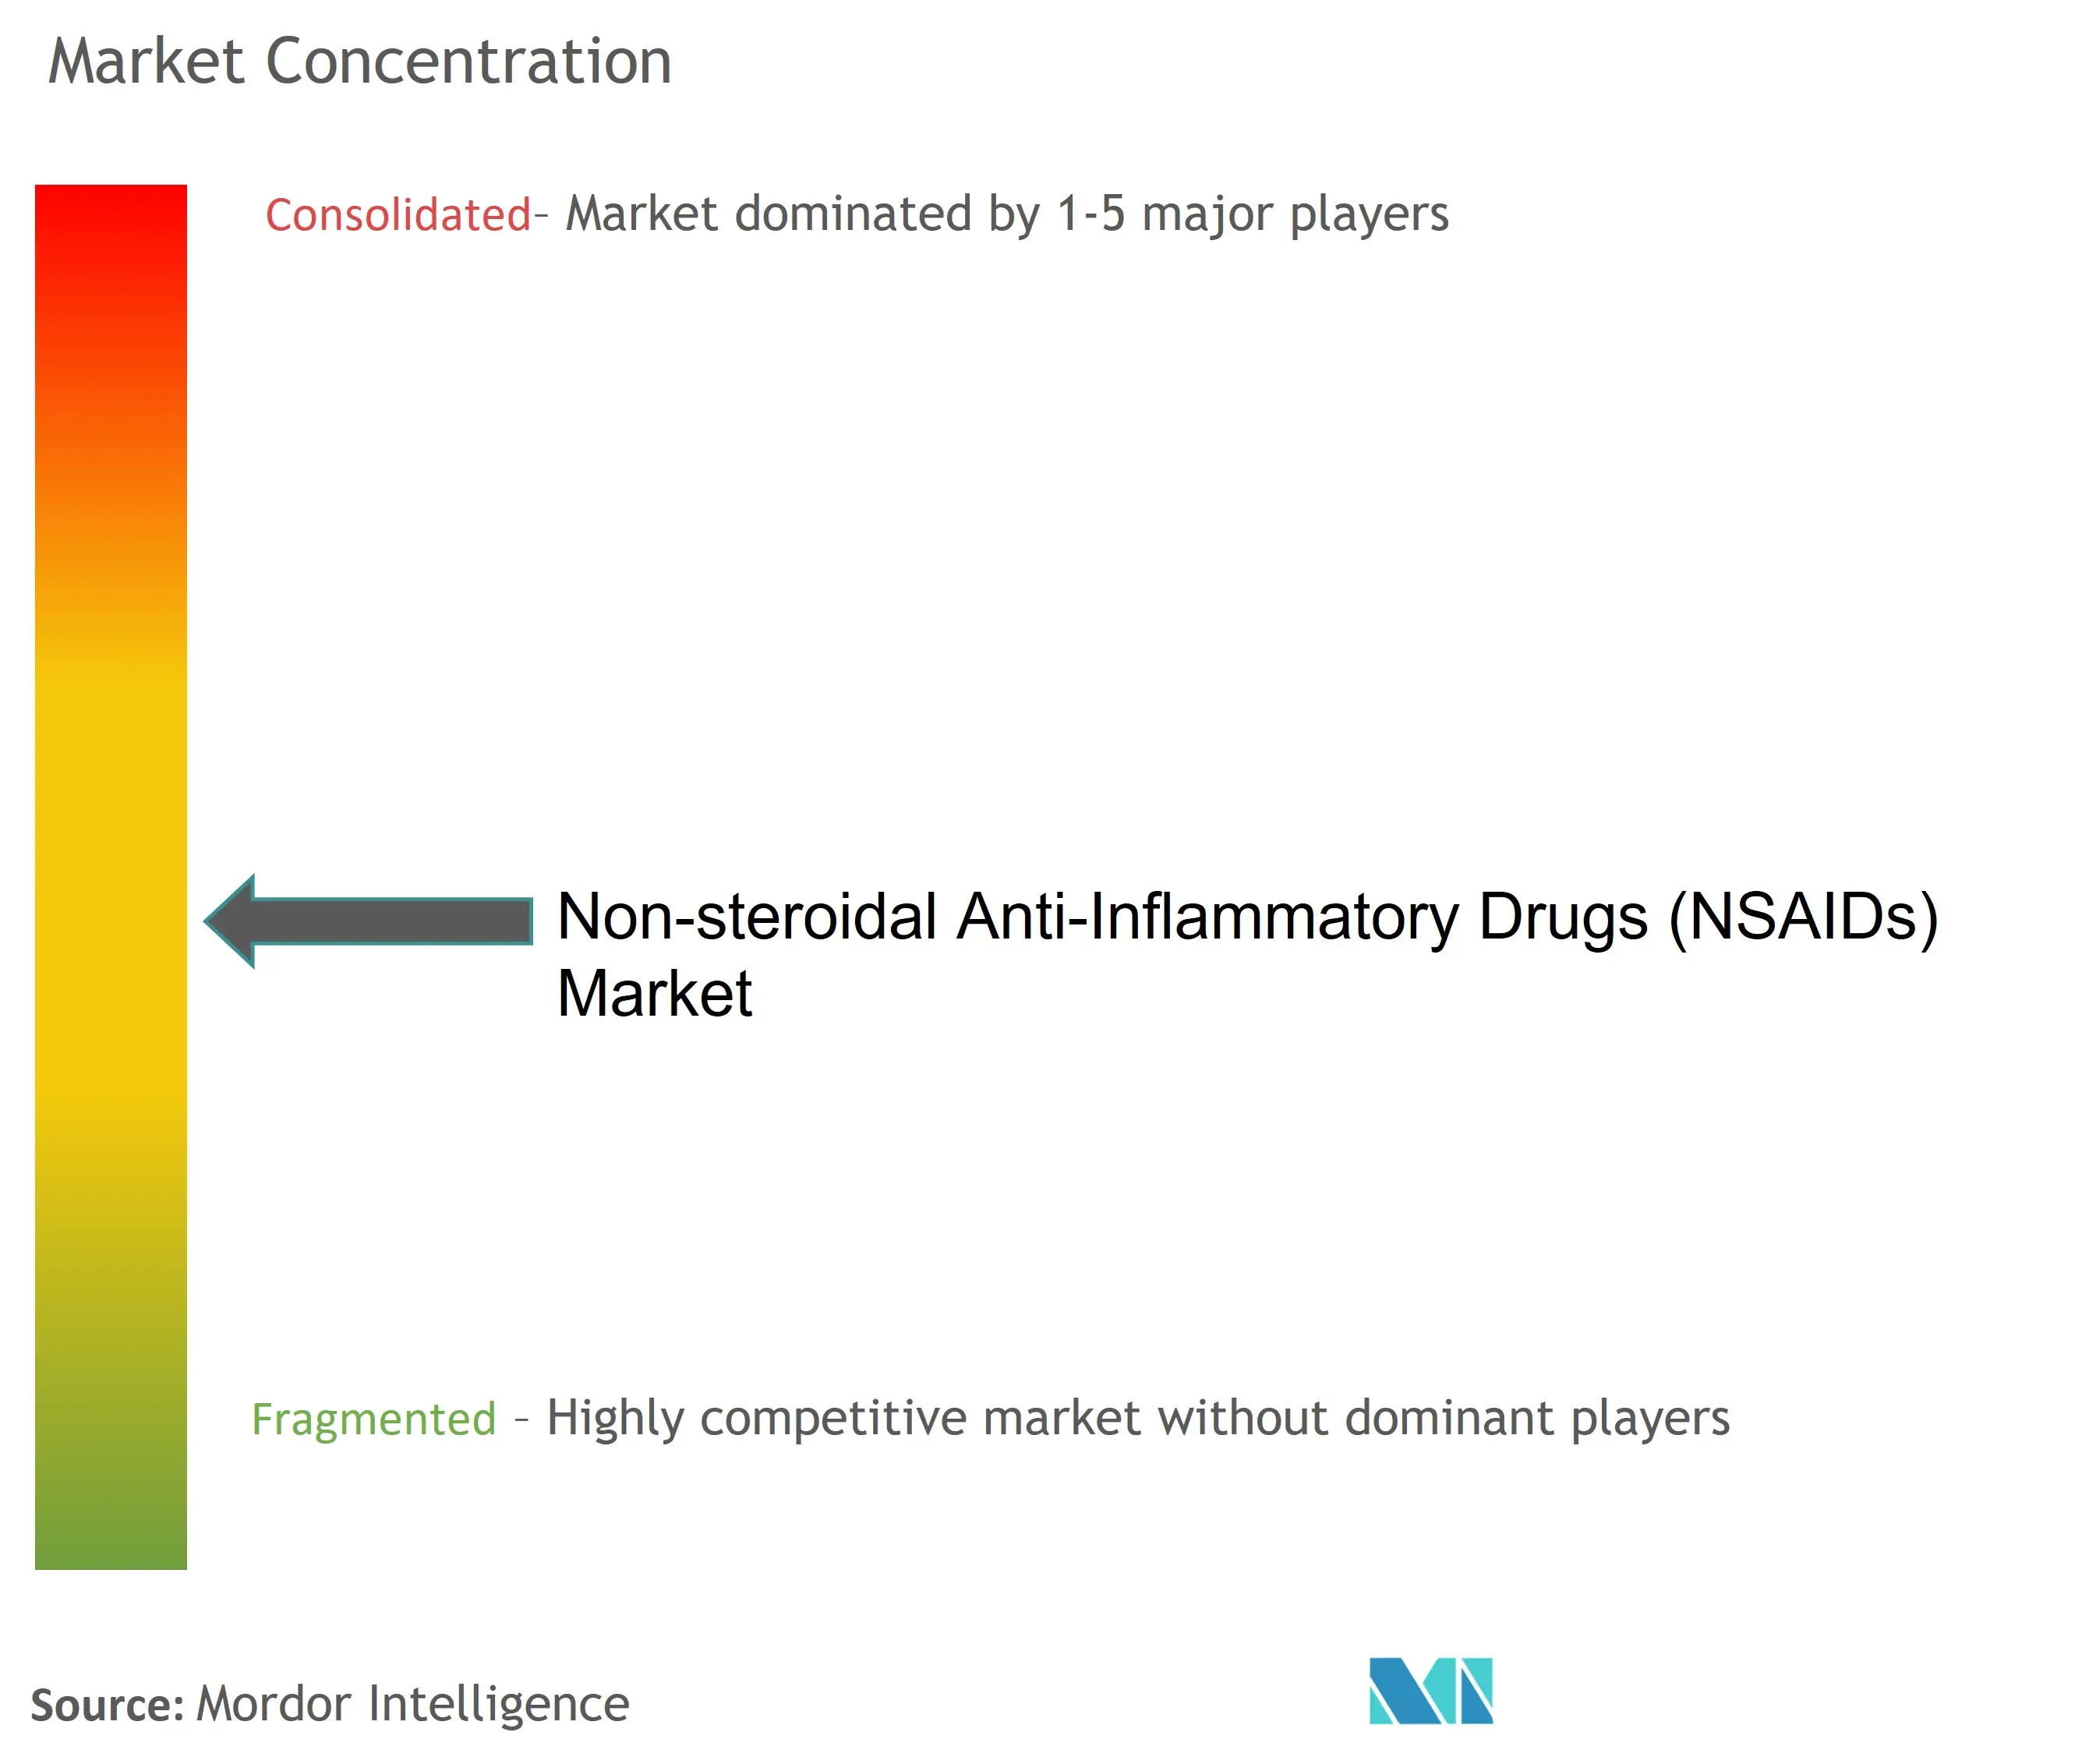 Marktkonzentration für nichtsteroidale entzündungshemmende Medikamente (NSAIDs).